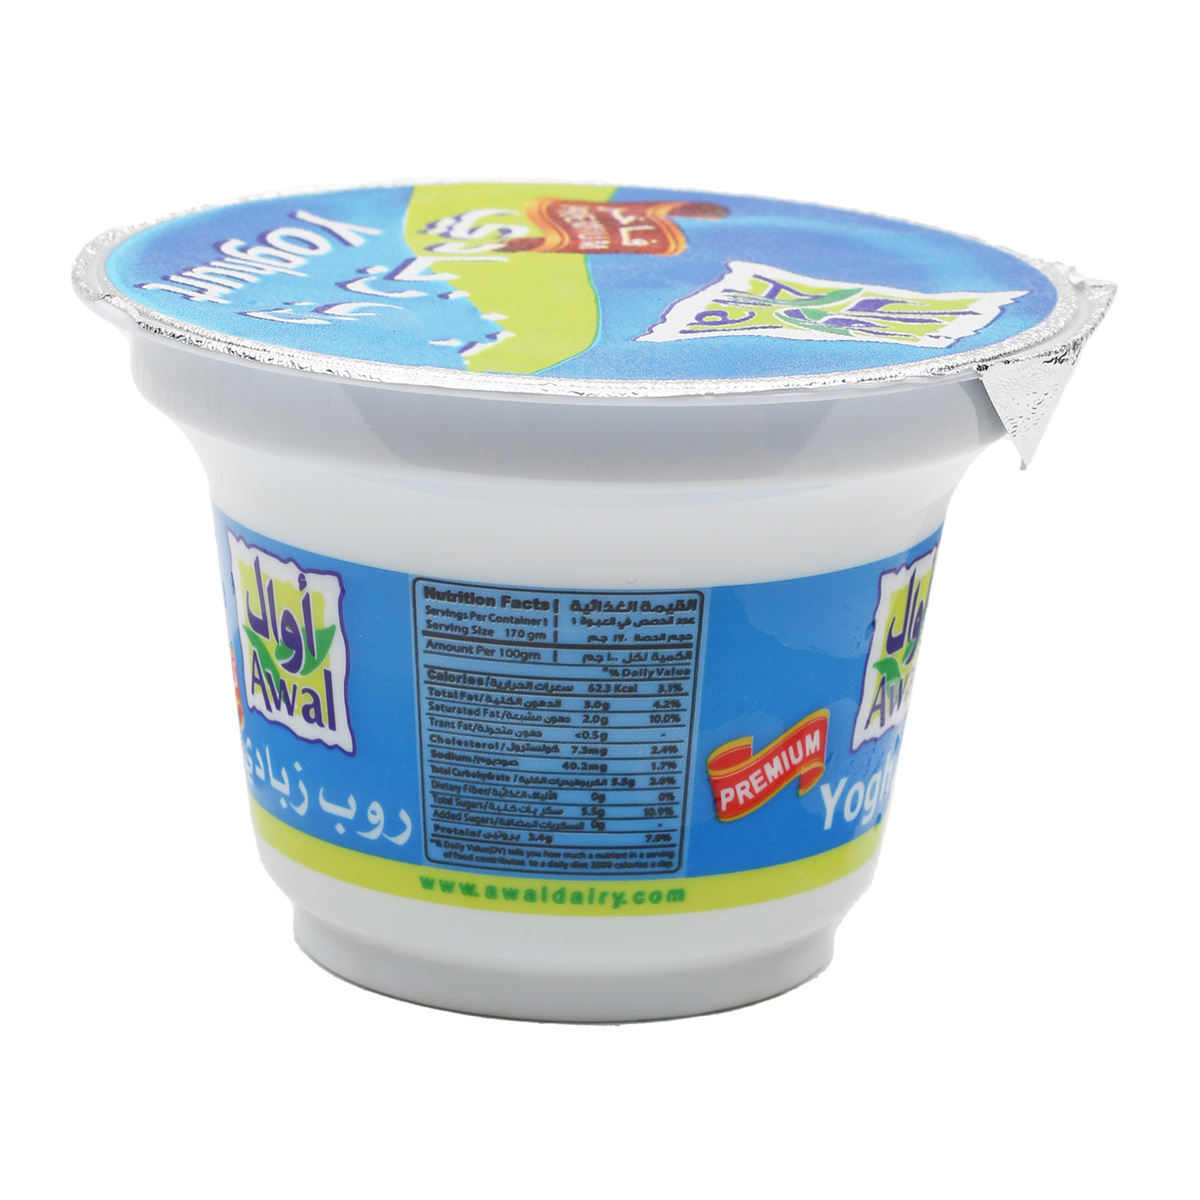 Awal Full Cream Yoghurt 160 g